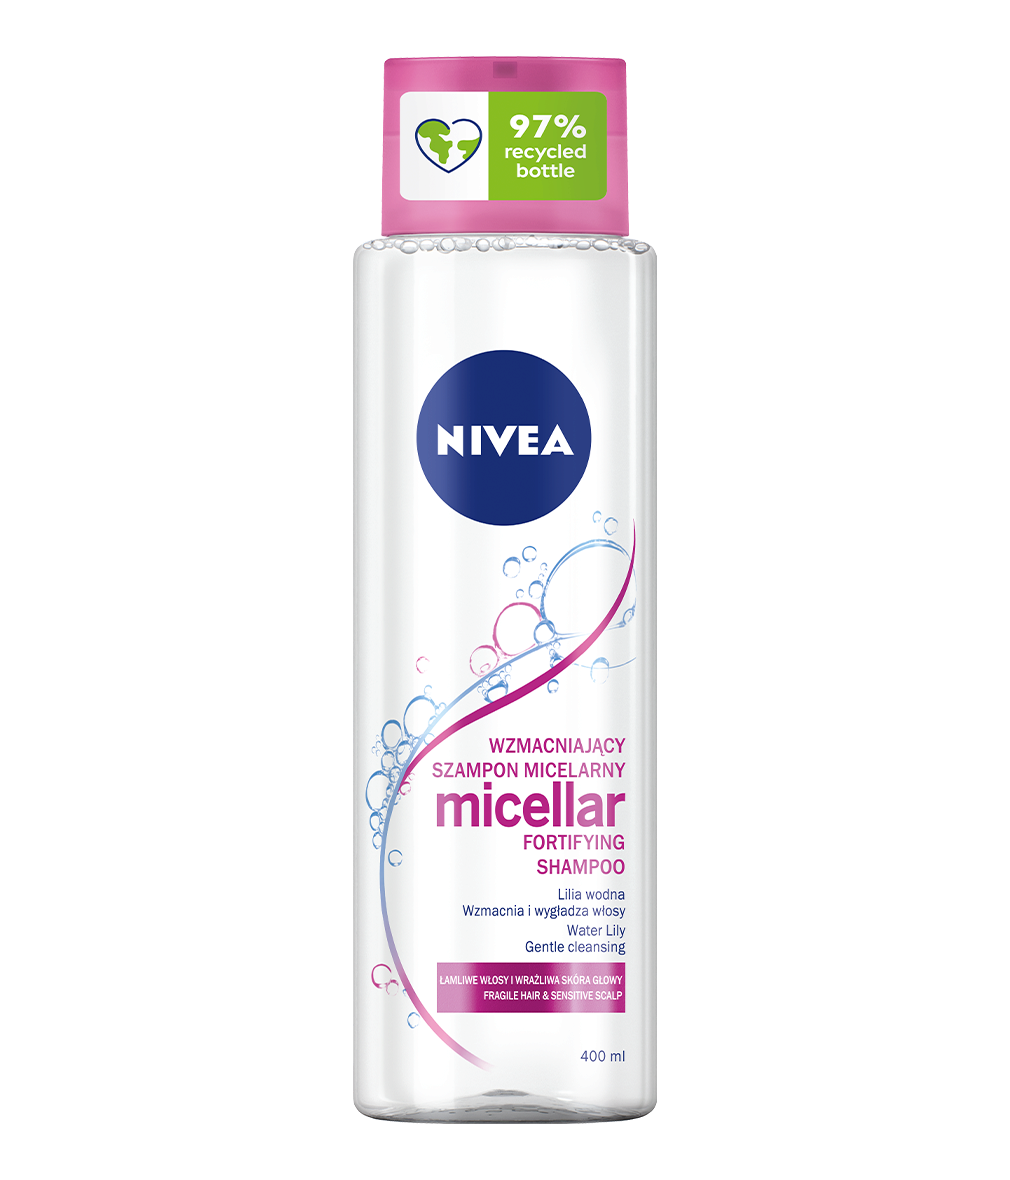 wzmacniający micelarny szampon z lilią wodną od nivea